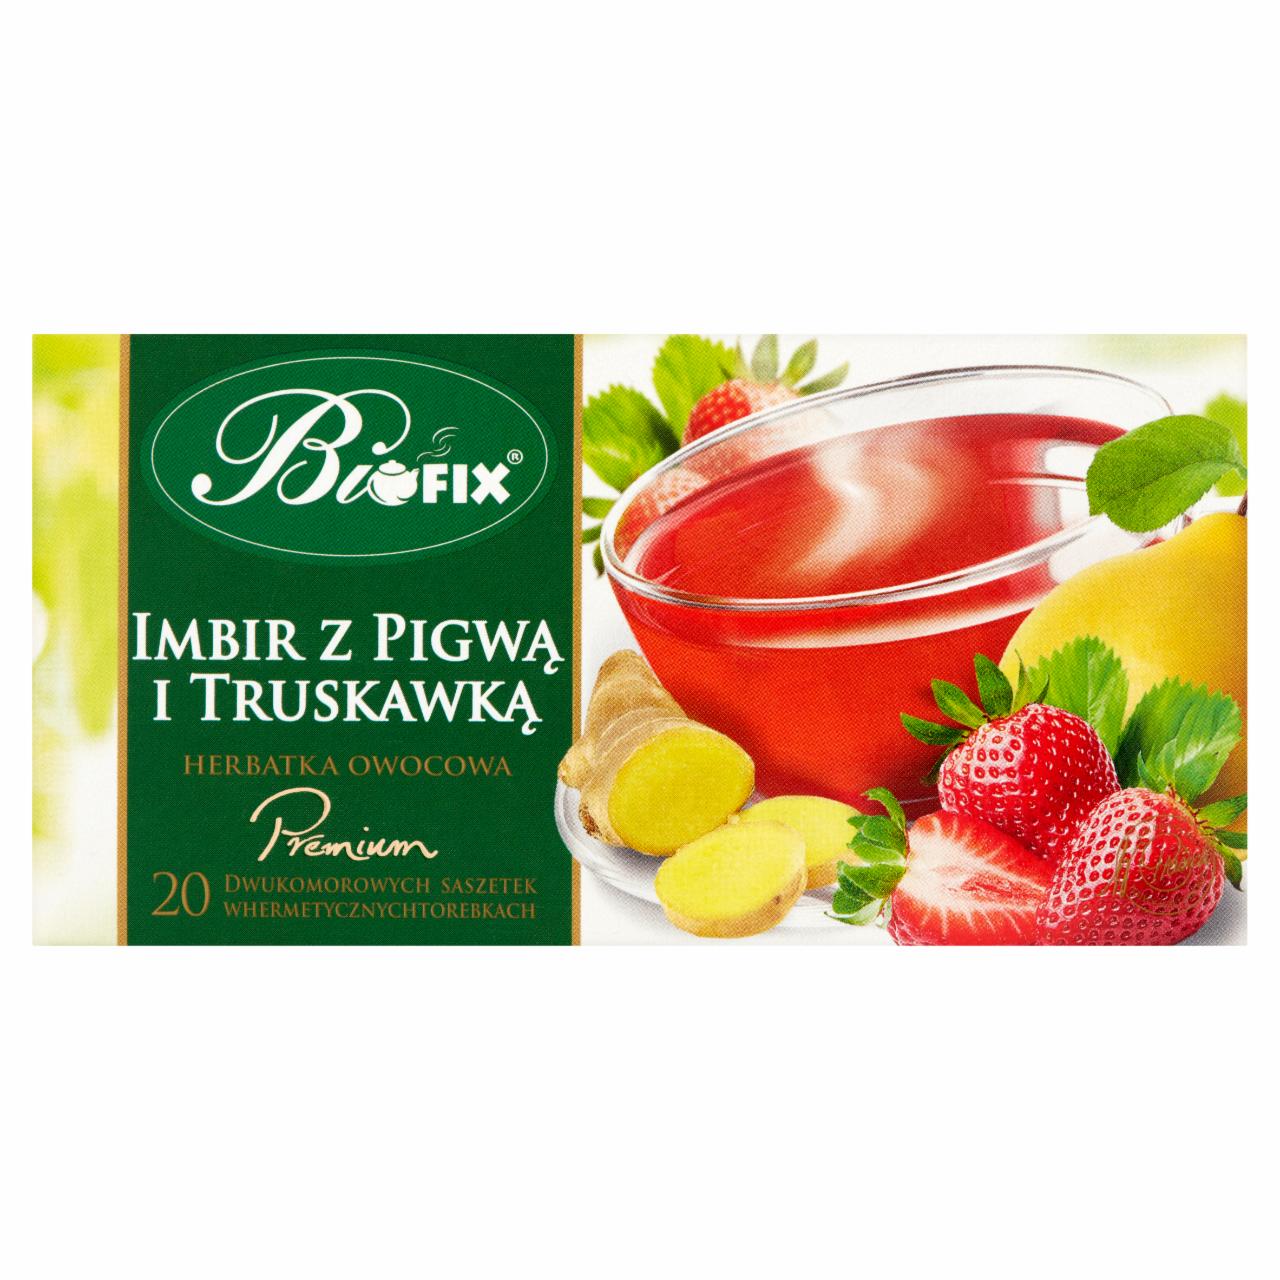 Zdjęcia - Bifix Premium Herbatka owocowa imbir z pigwą i truskawką 40 g (20 x 2 g)